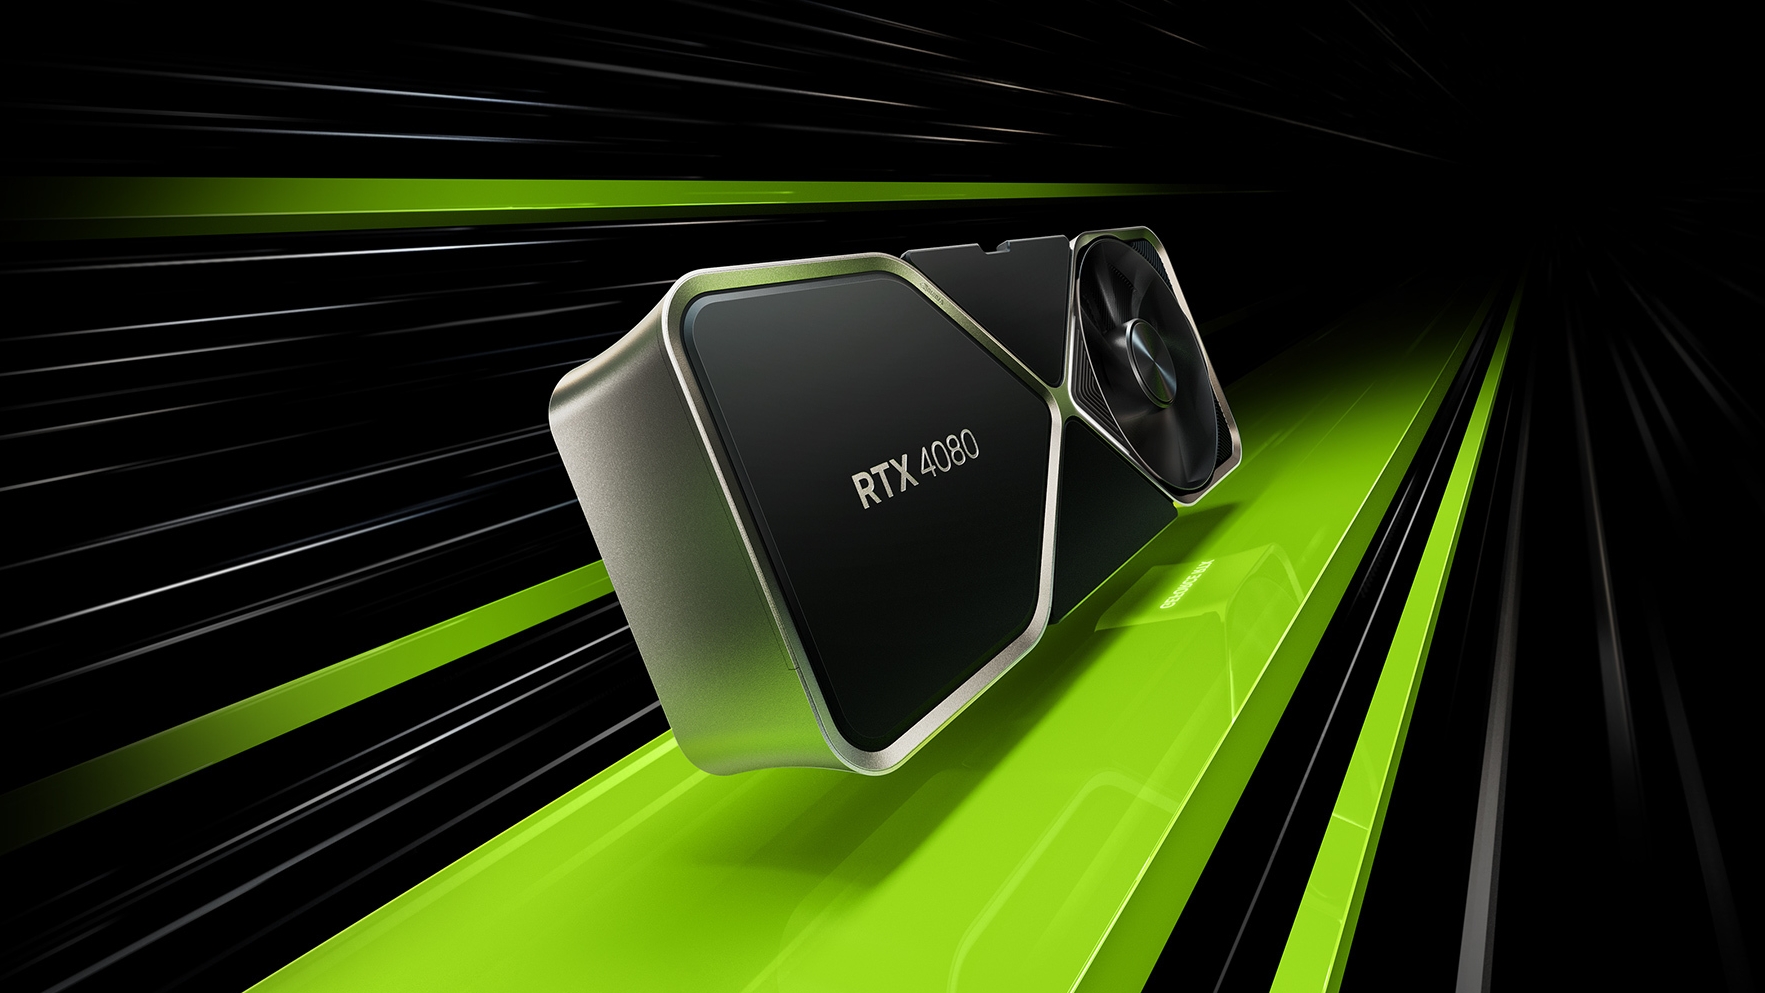 Immagine pubblicata in relazione al seguente contenuto: NVIDIA annulla ufficialmente il lancio della video card GeForce RTX 4080 12GB | Nome immagine: news33767_GeForce-RTX-4080_1.jpg